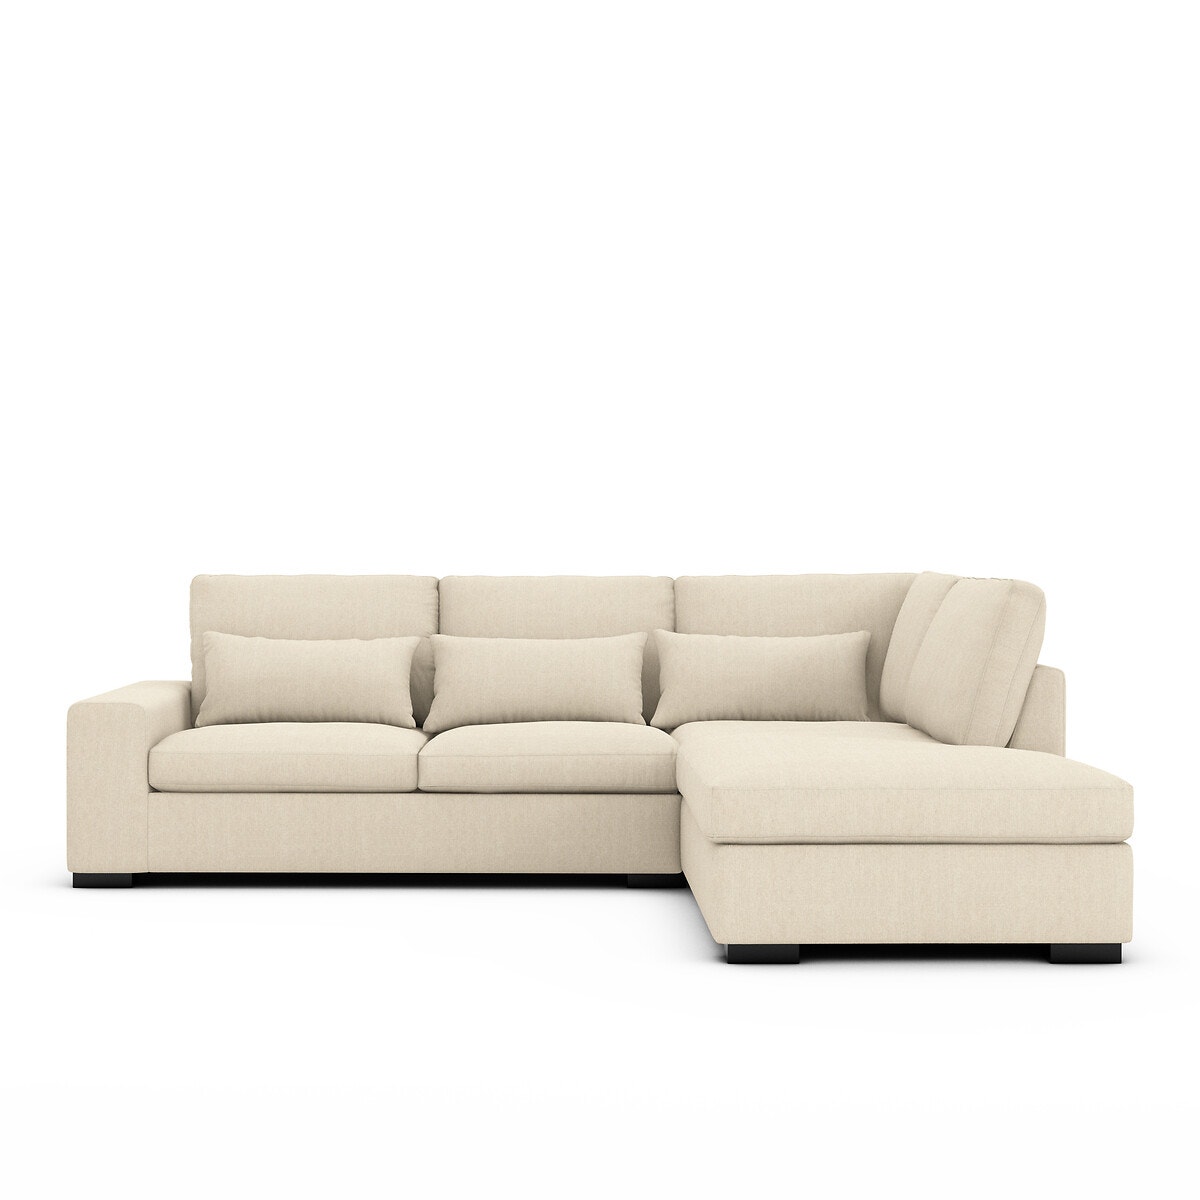 Σπίτι > Έπιπλα > Καθιστικό > Καναπέδες > Γωνιακοί καναπέδες Γωνιακός καναπές-κρεβάτι από βαμβάκι λινό τεχνολογίας Bultex Μ208xΠ245xΥ80cm